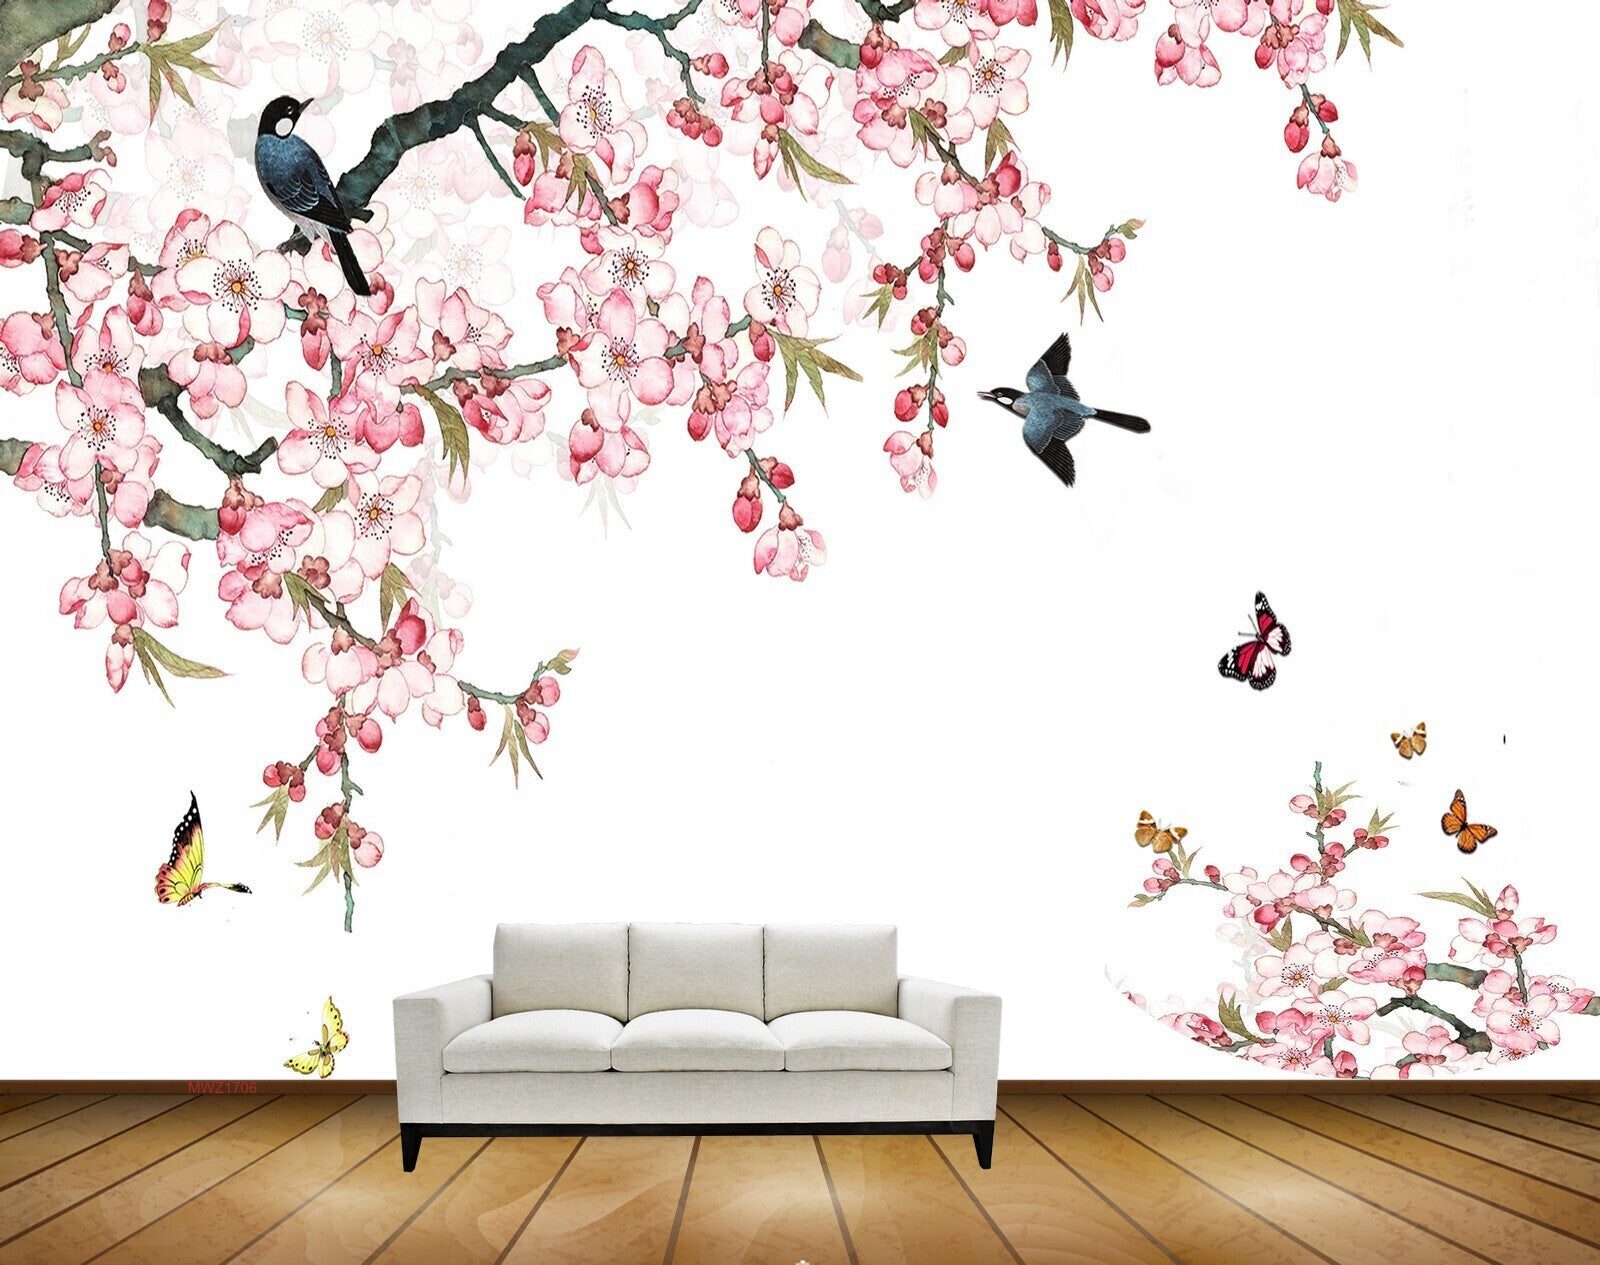 Avikalp MWZ1706 Pink Flowers Birds Butterflies HD Wallpaper